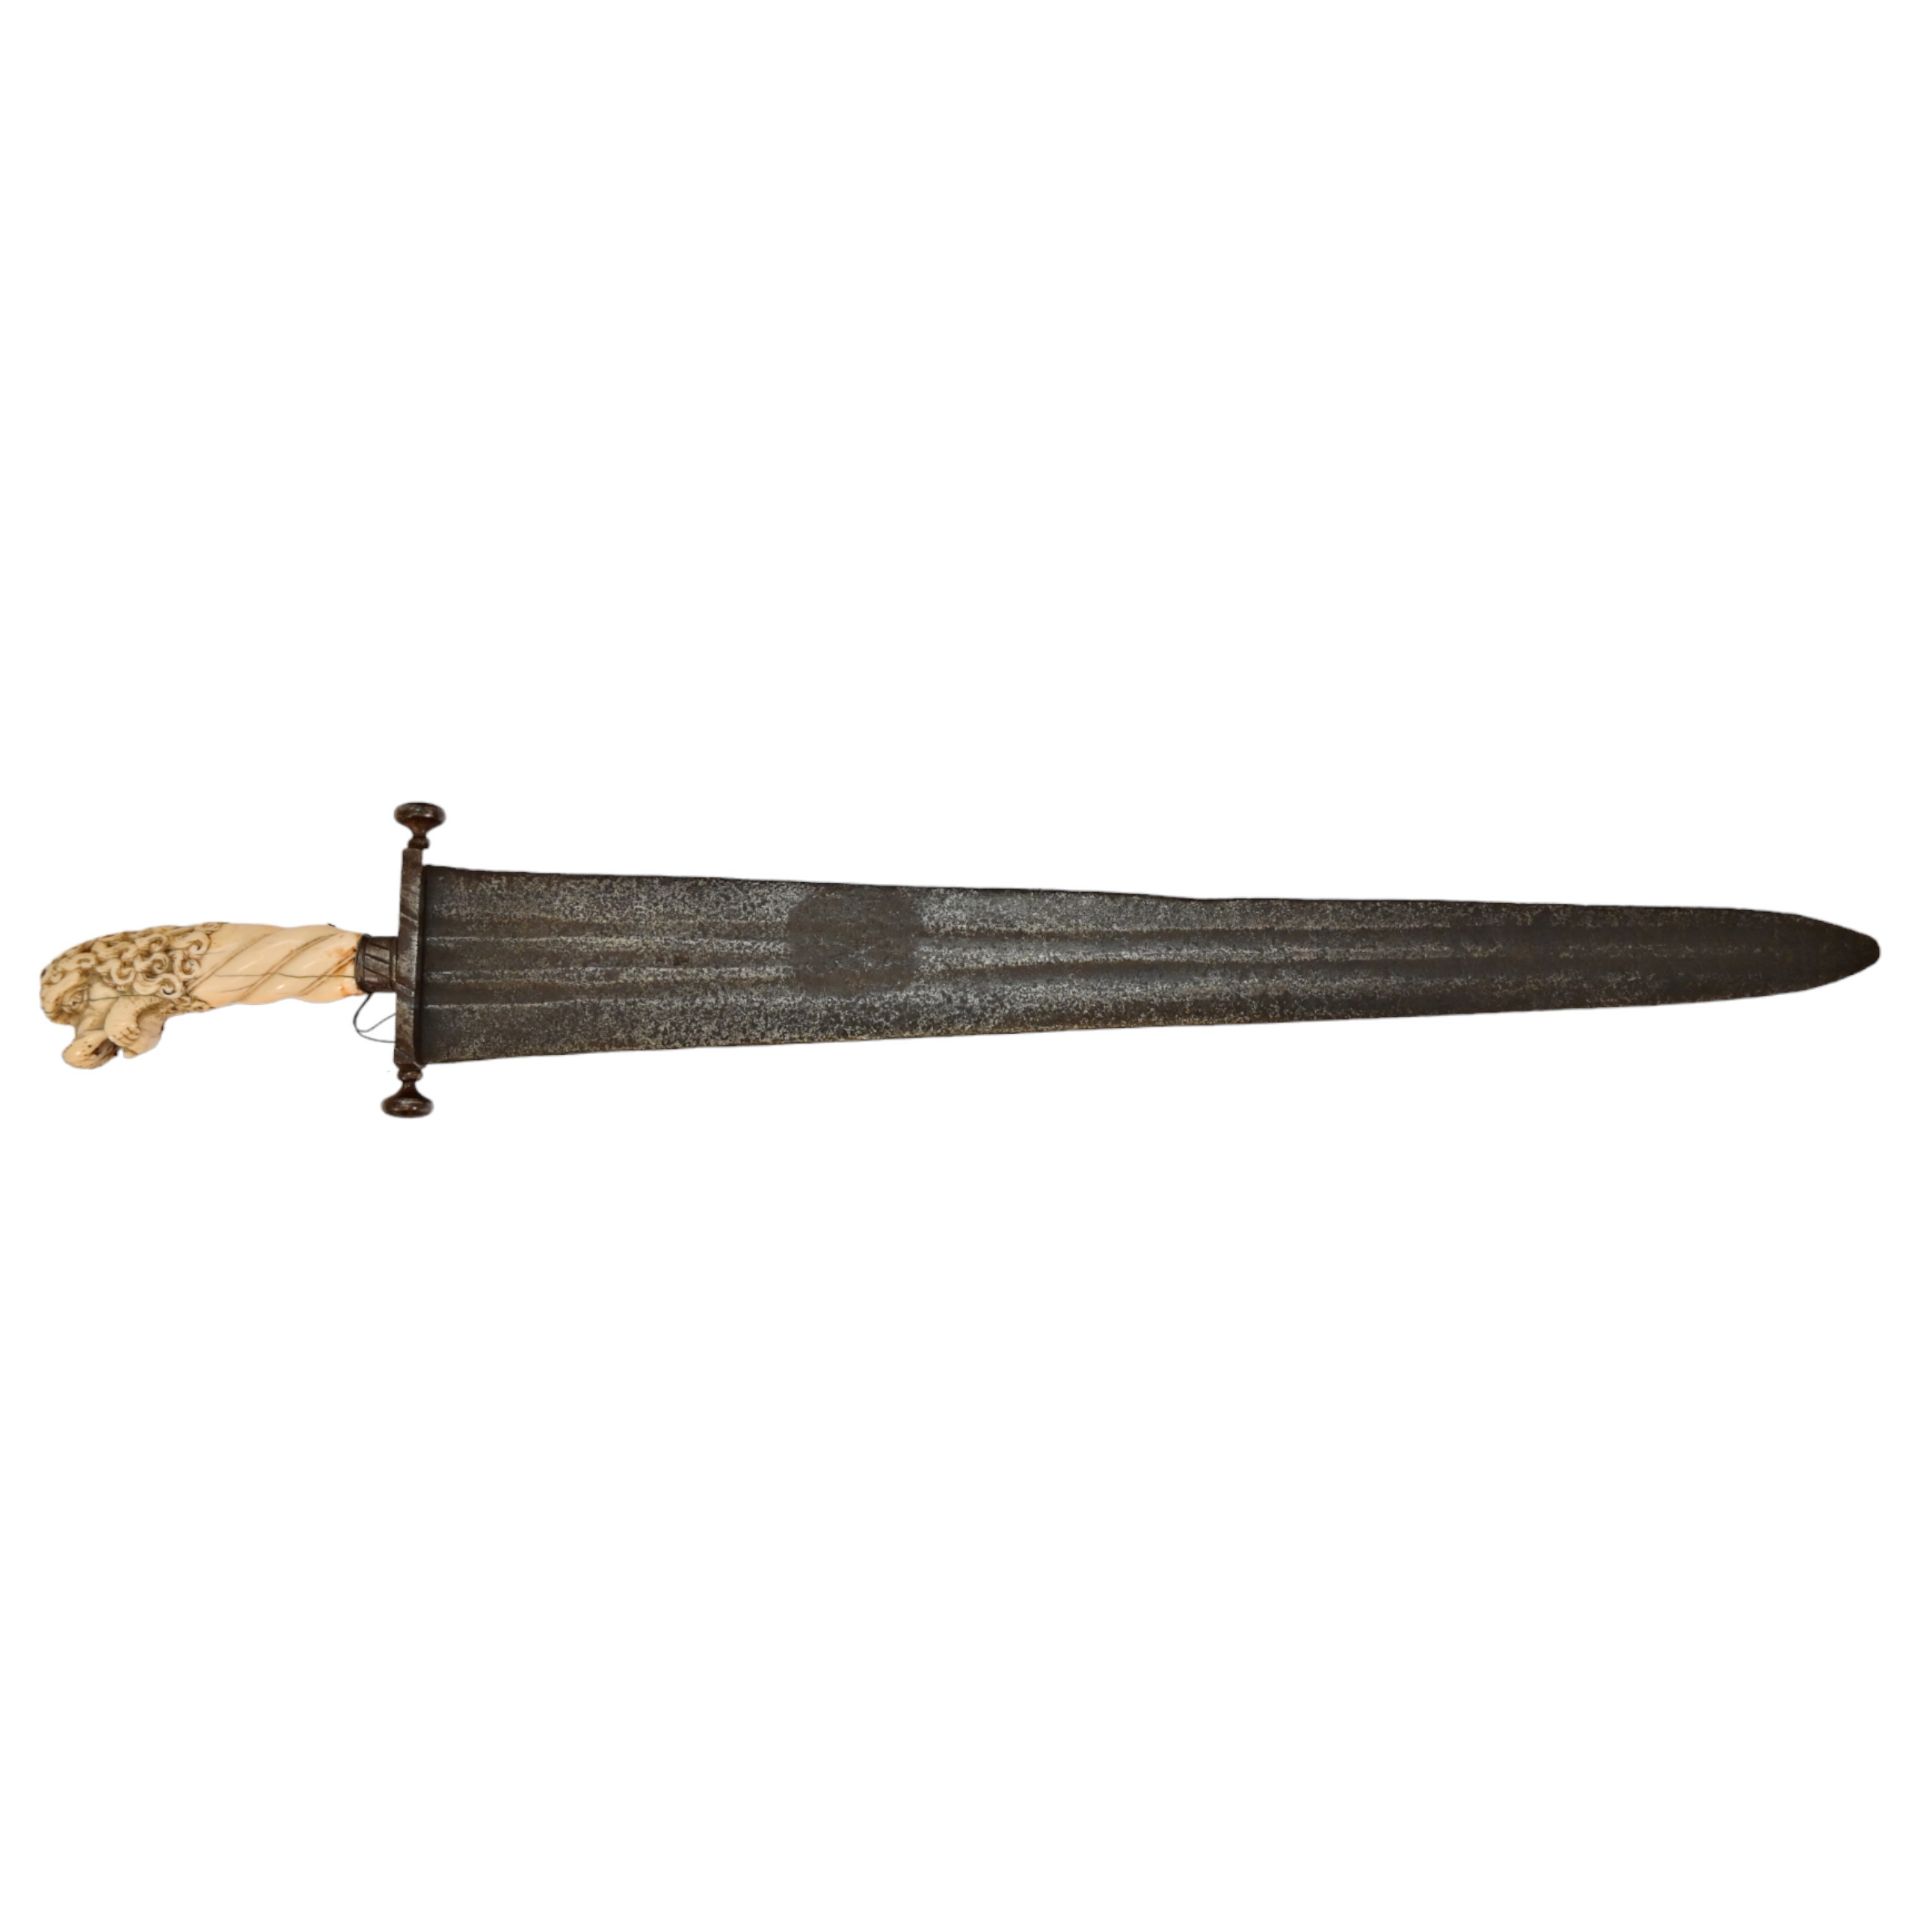 Rare Cinquedea type Sword, 16-17th Century, Italy. - Bild 3 aus 14